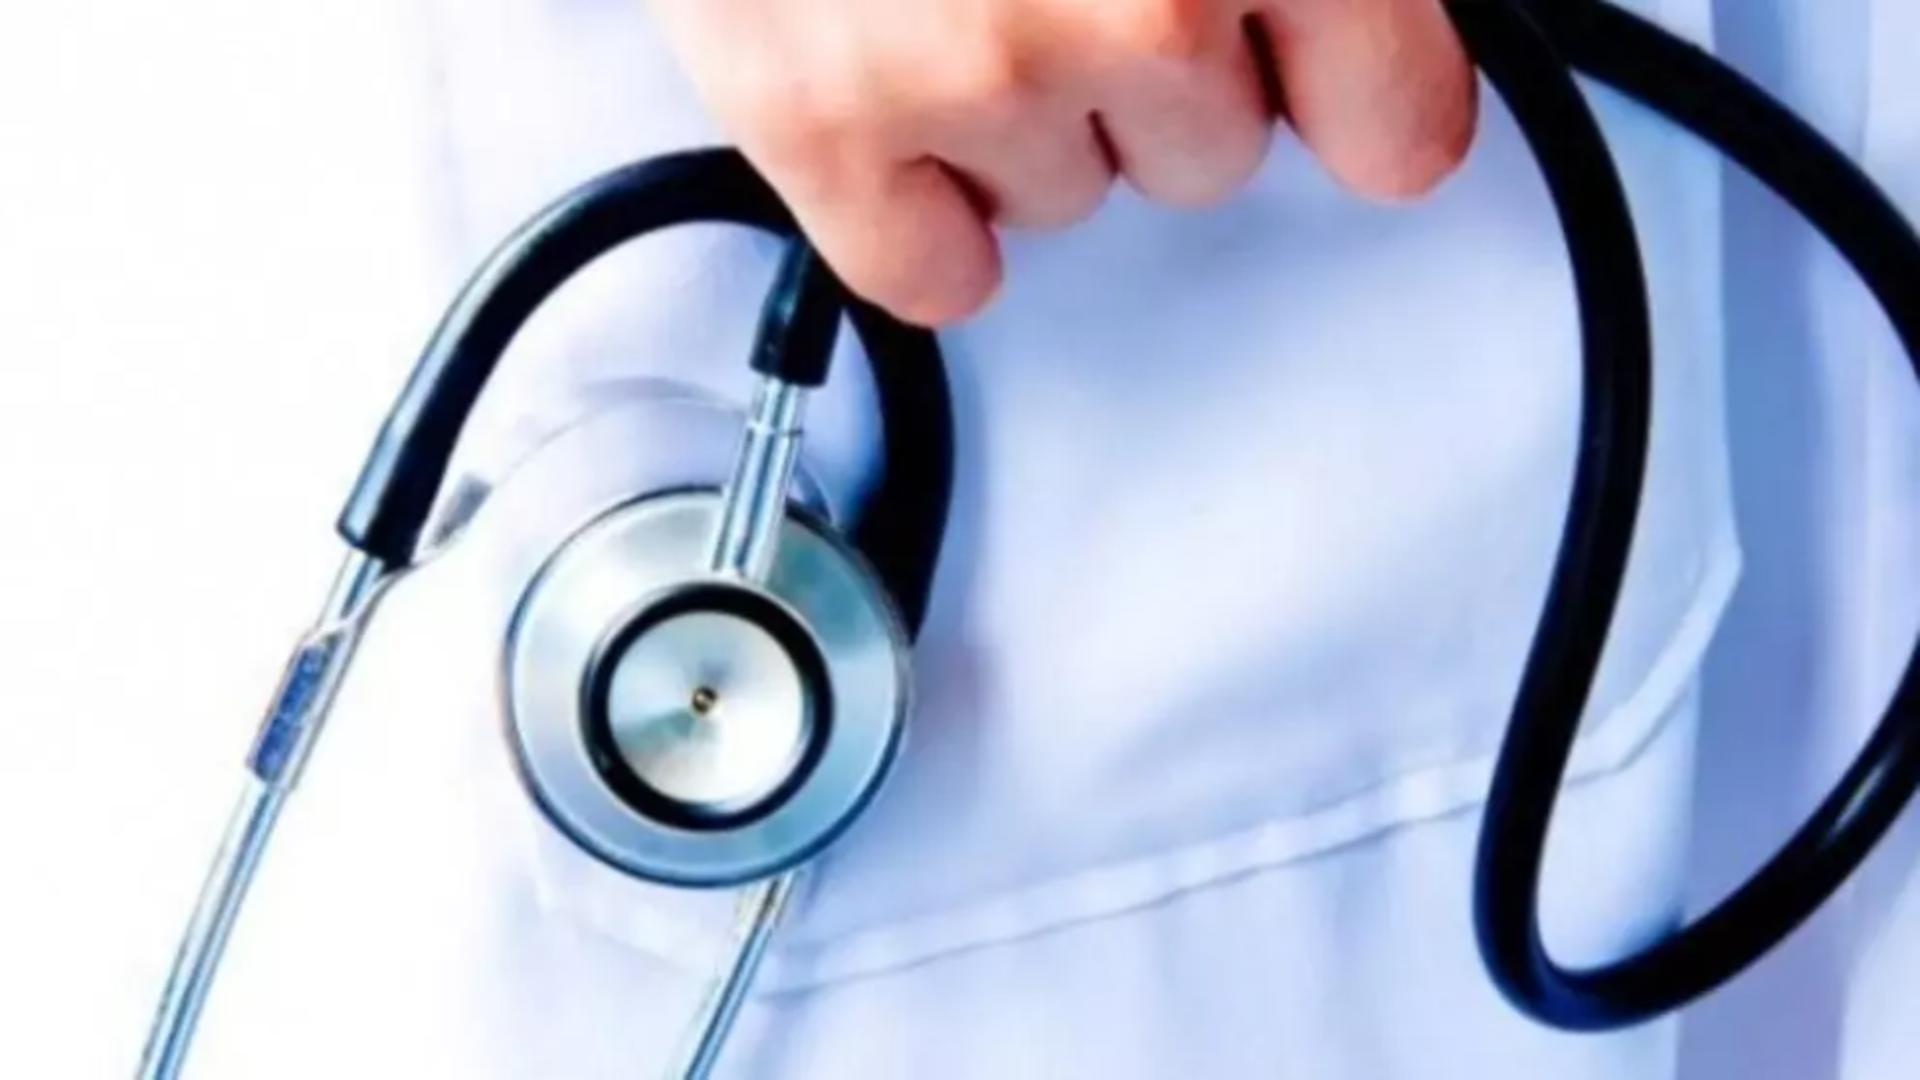 Diplomele de asistent medical obținute înainte de aderarea la UE vor fi recunoscute automat în statele membre